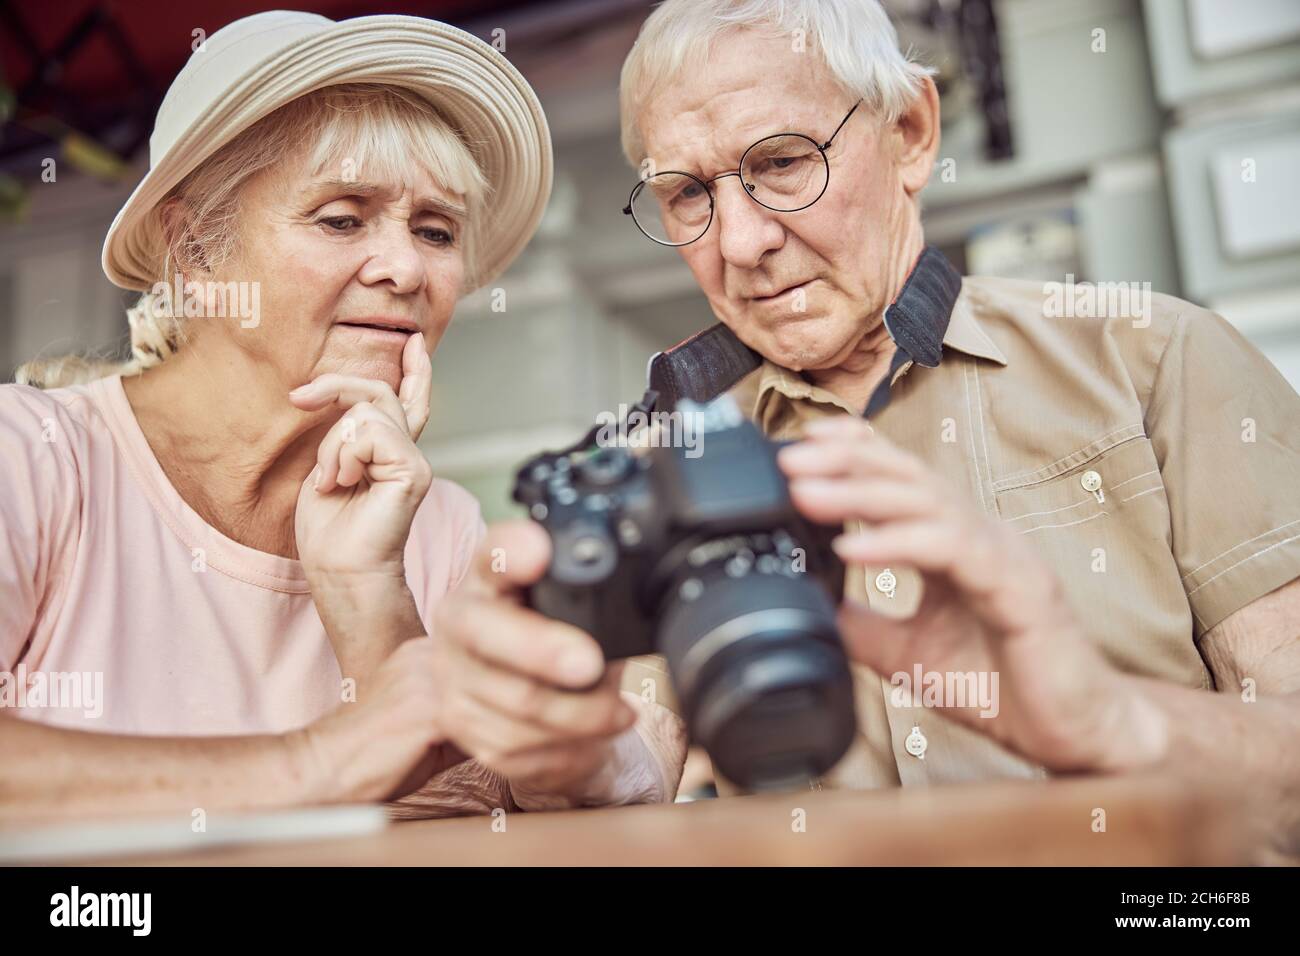 Gente envejecida perpleja mirando la cámara digital Fotografía de stock -  Alamy